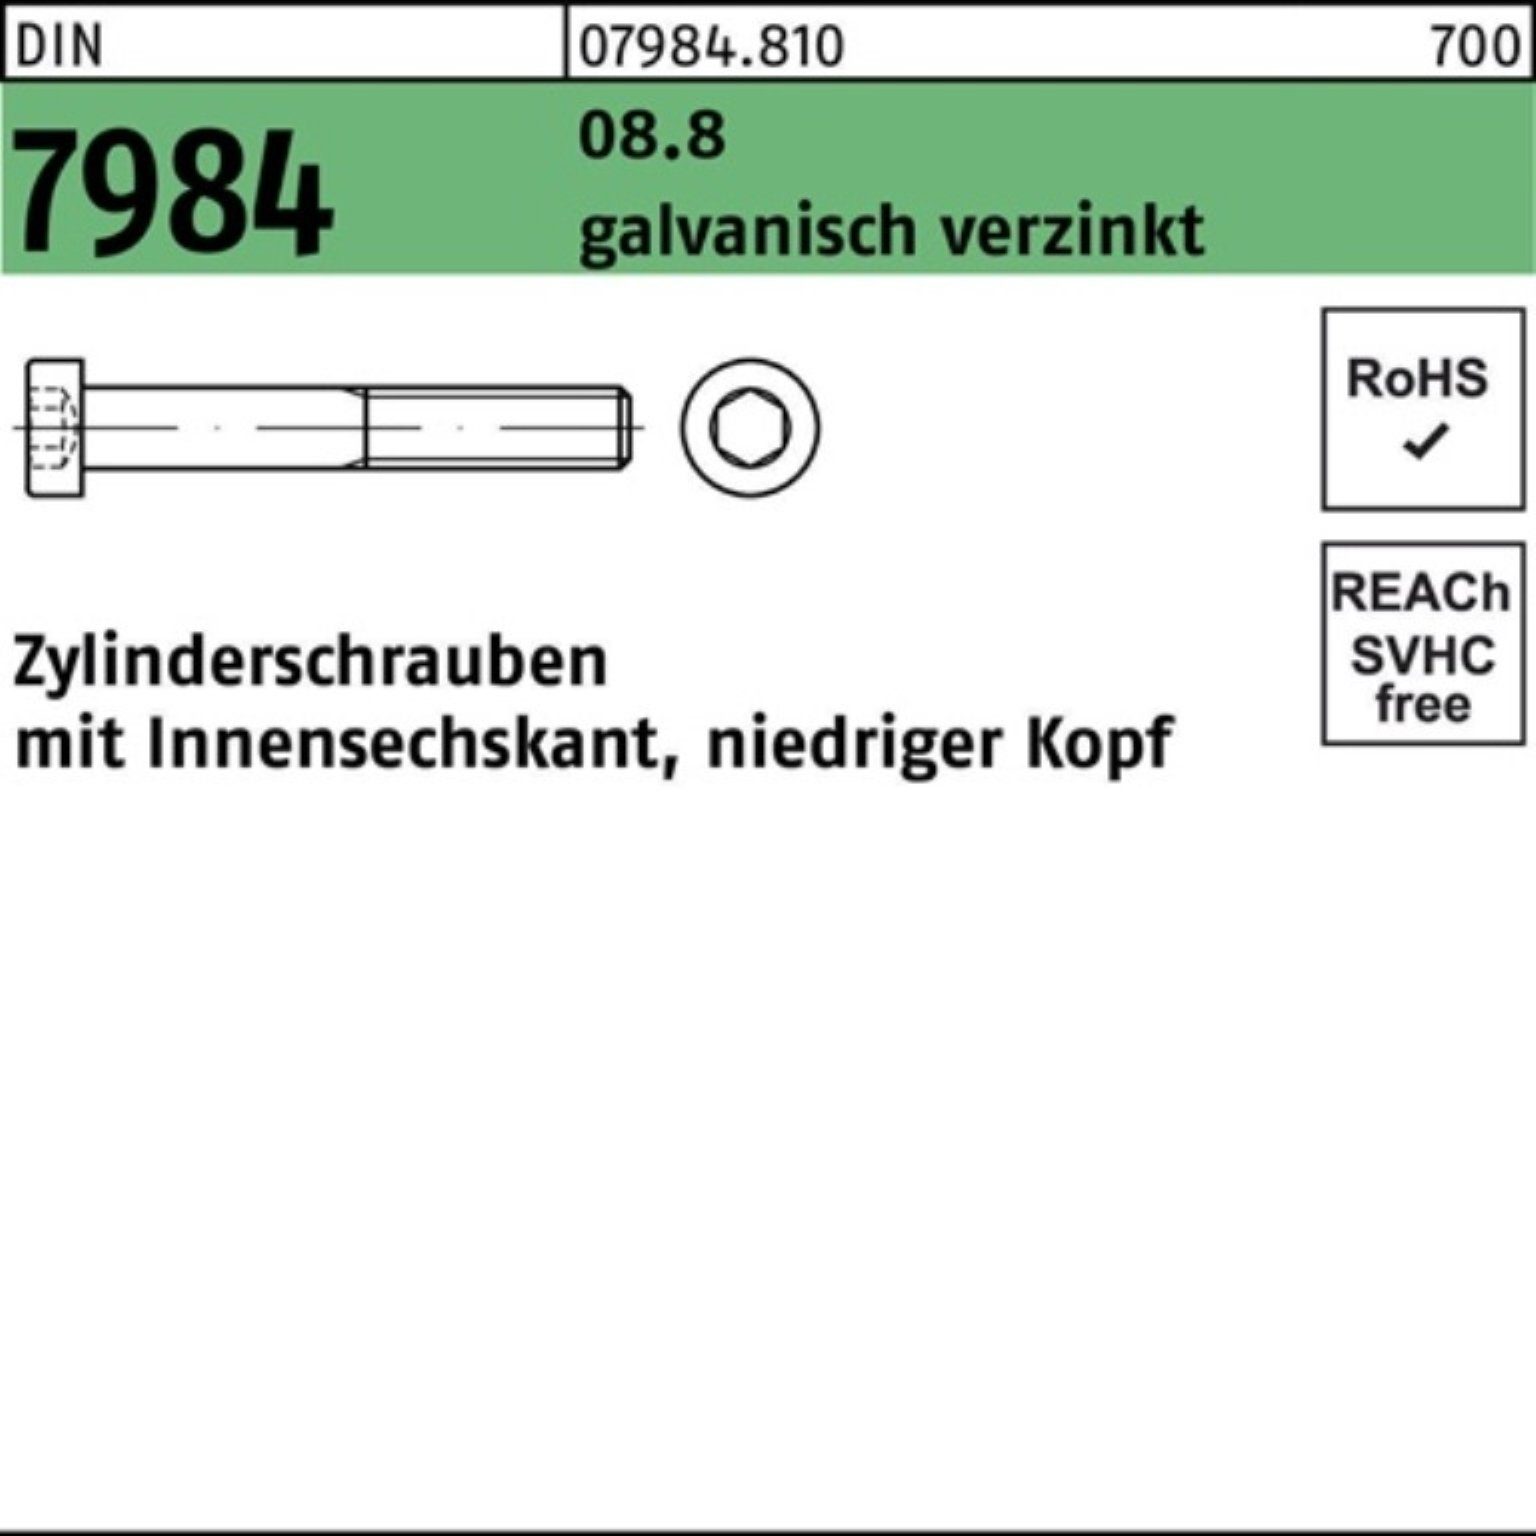 DIN Zylinderschraube 2 7984 8.8 Zylinderschraube M20x80 Pack galv.verz. Reyher Innen-6kt 100er